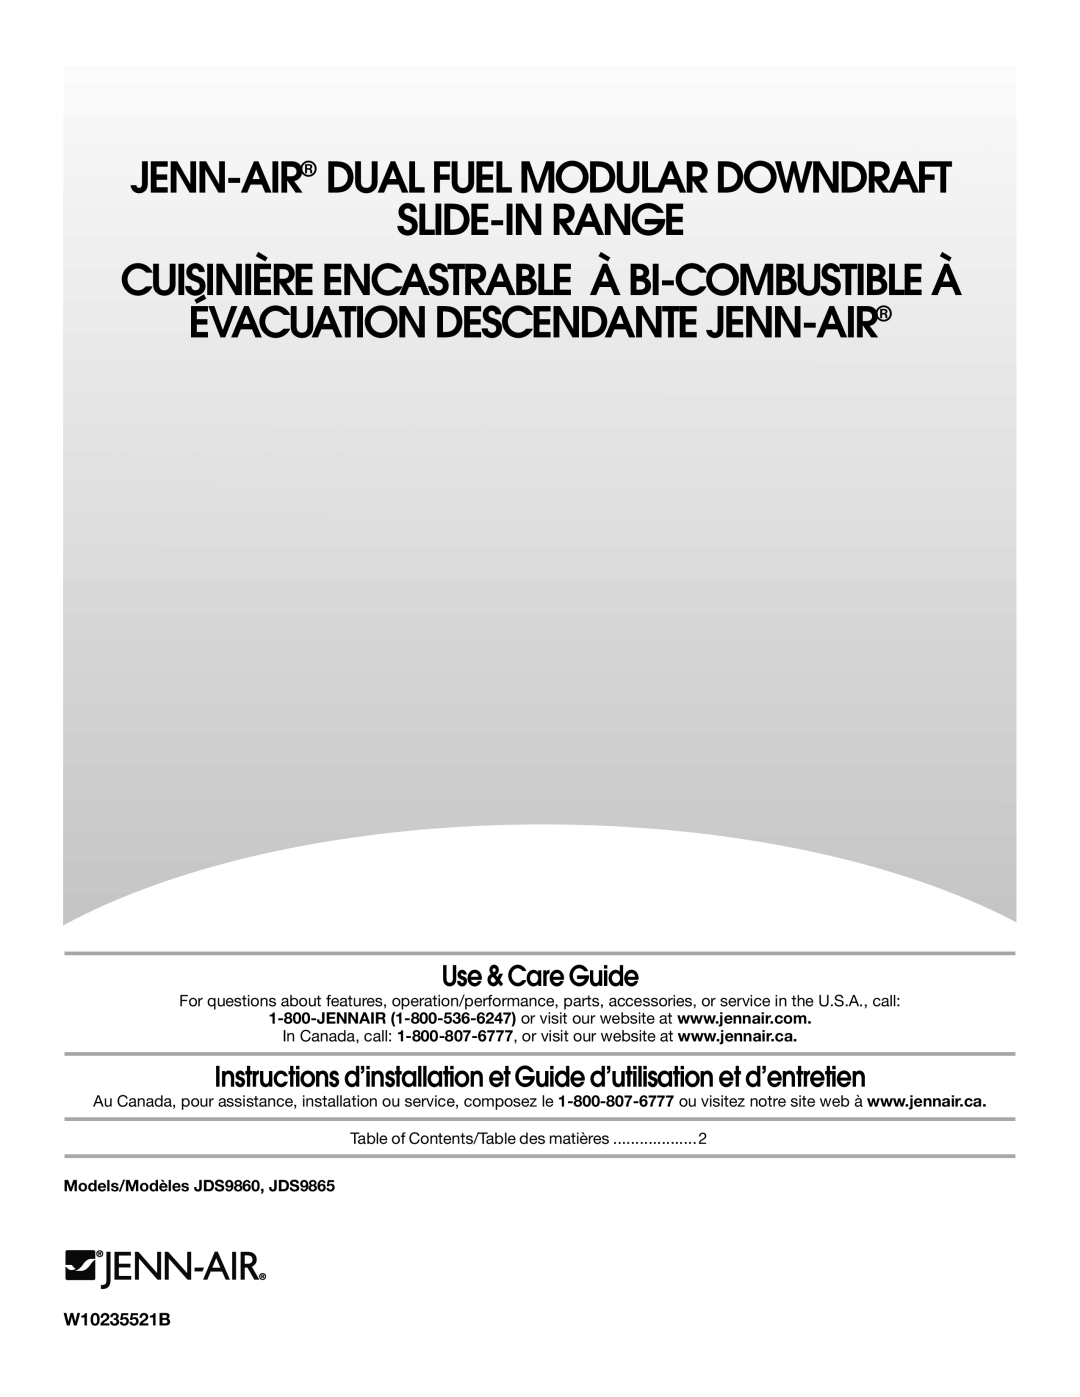 Jenn-Air JDS9865 manual Use & Care Guide, Instructions d’installation et Guide d’utilisation et d’entretien, W10235521B 